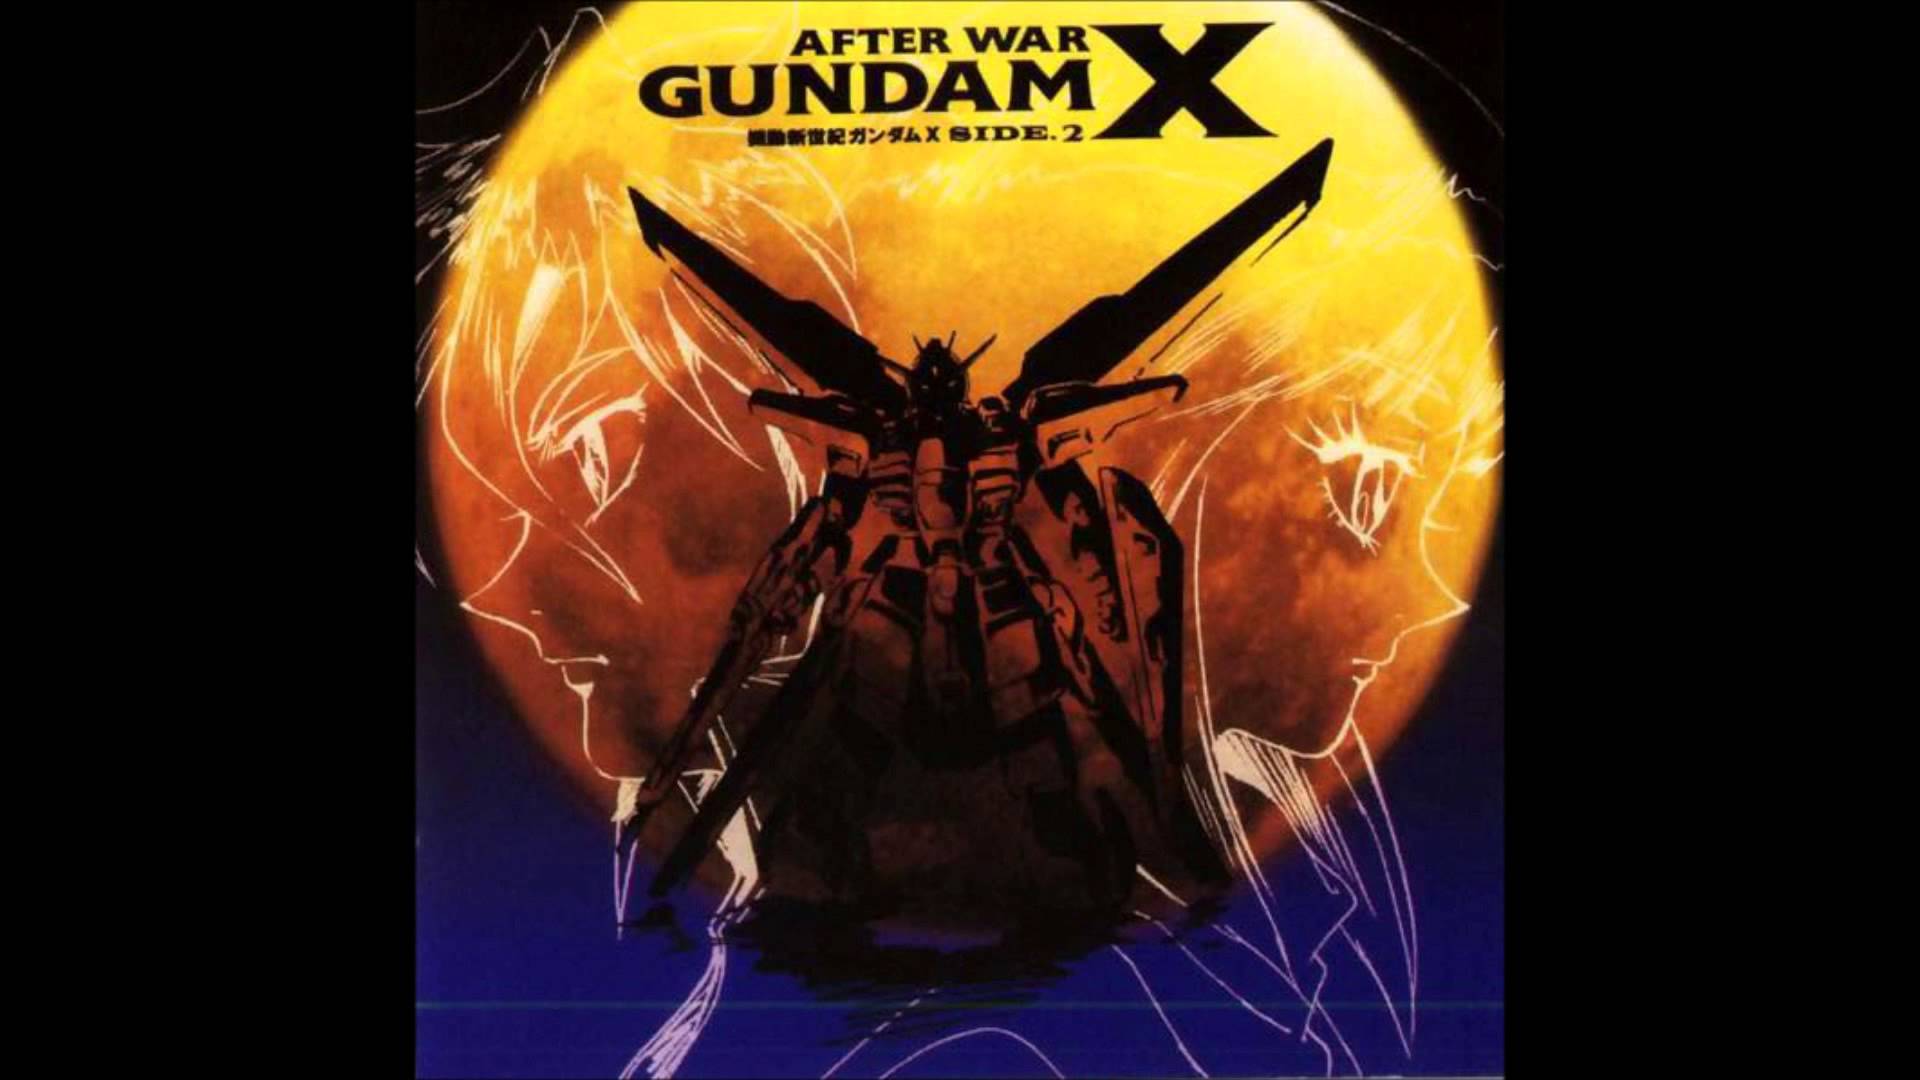 After War Gundam X #23